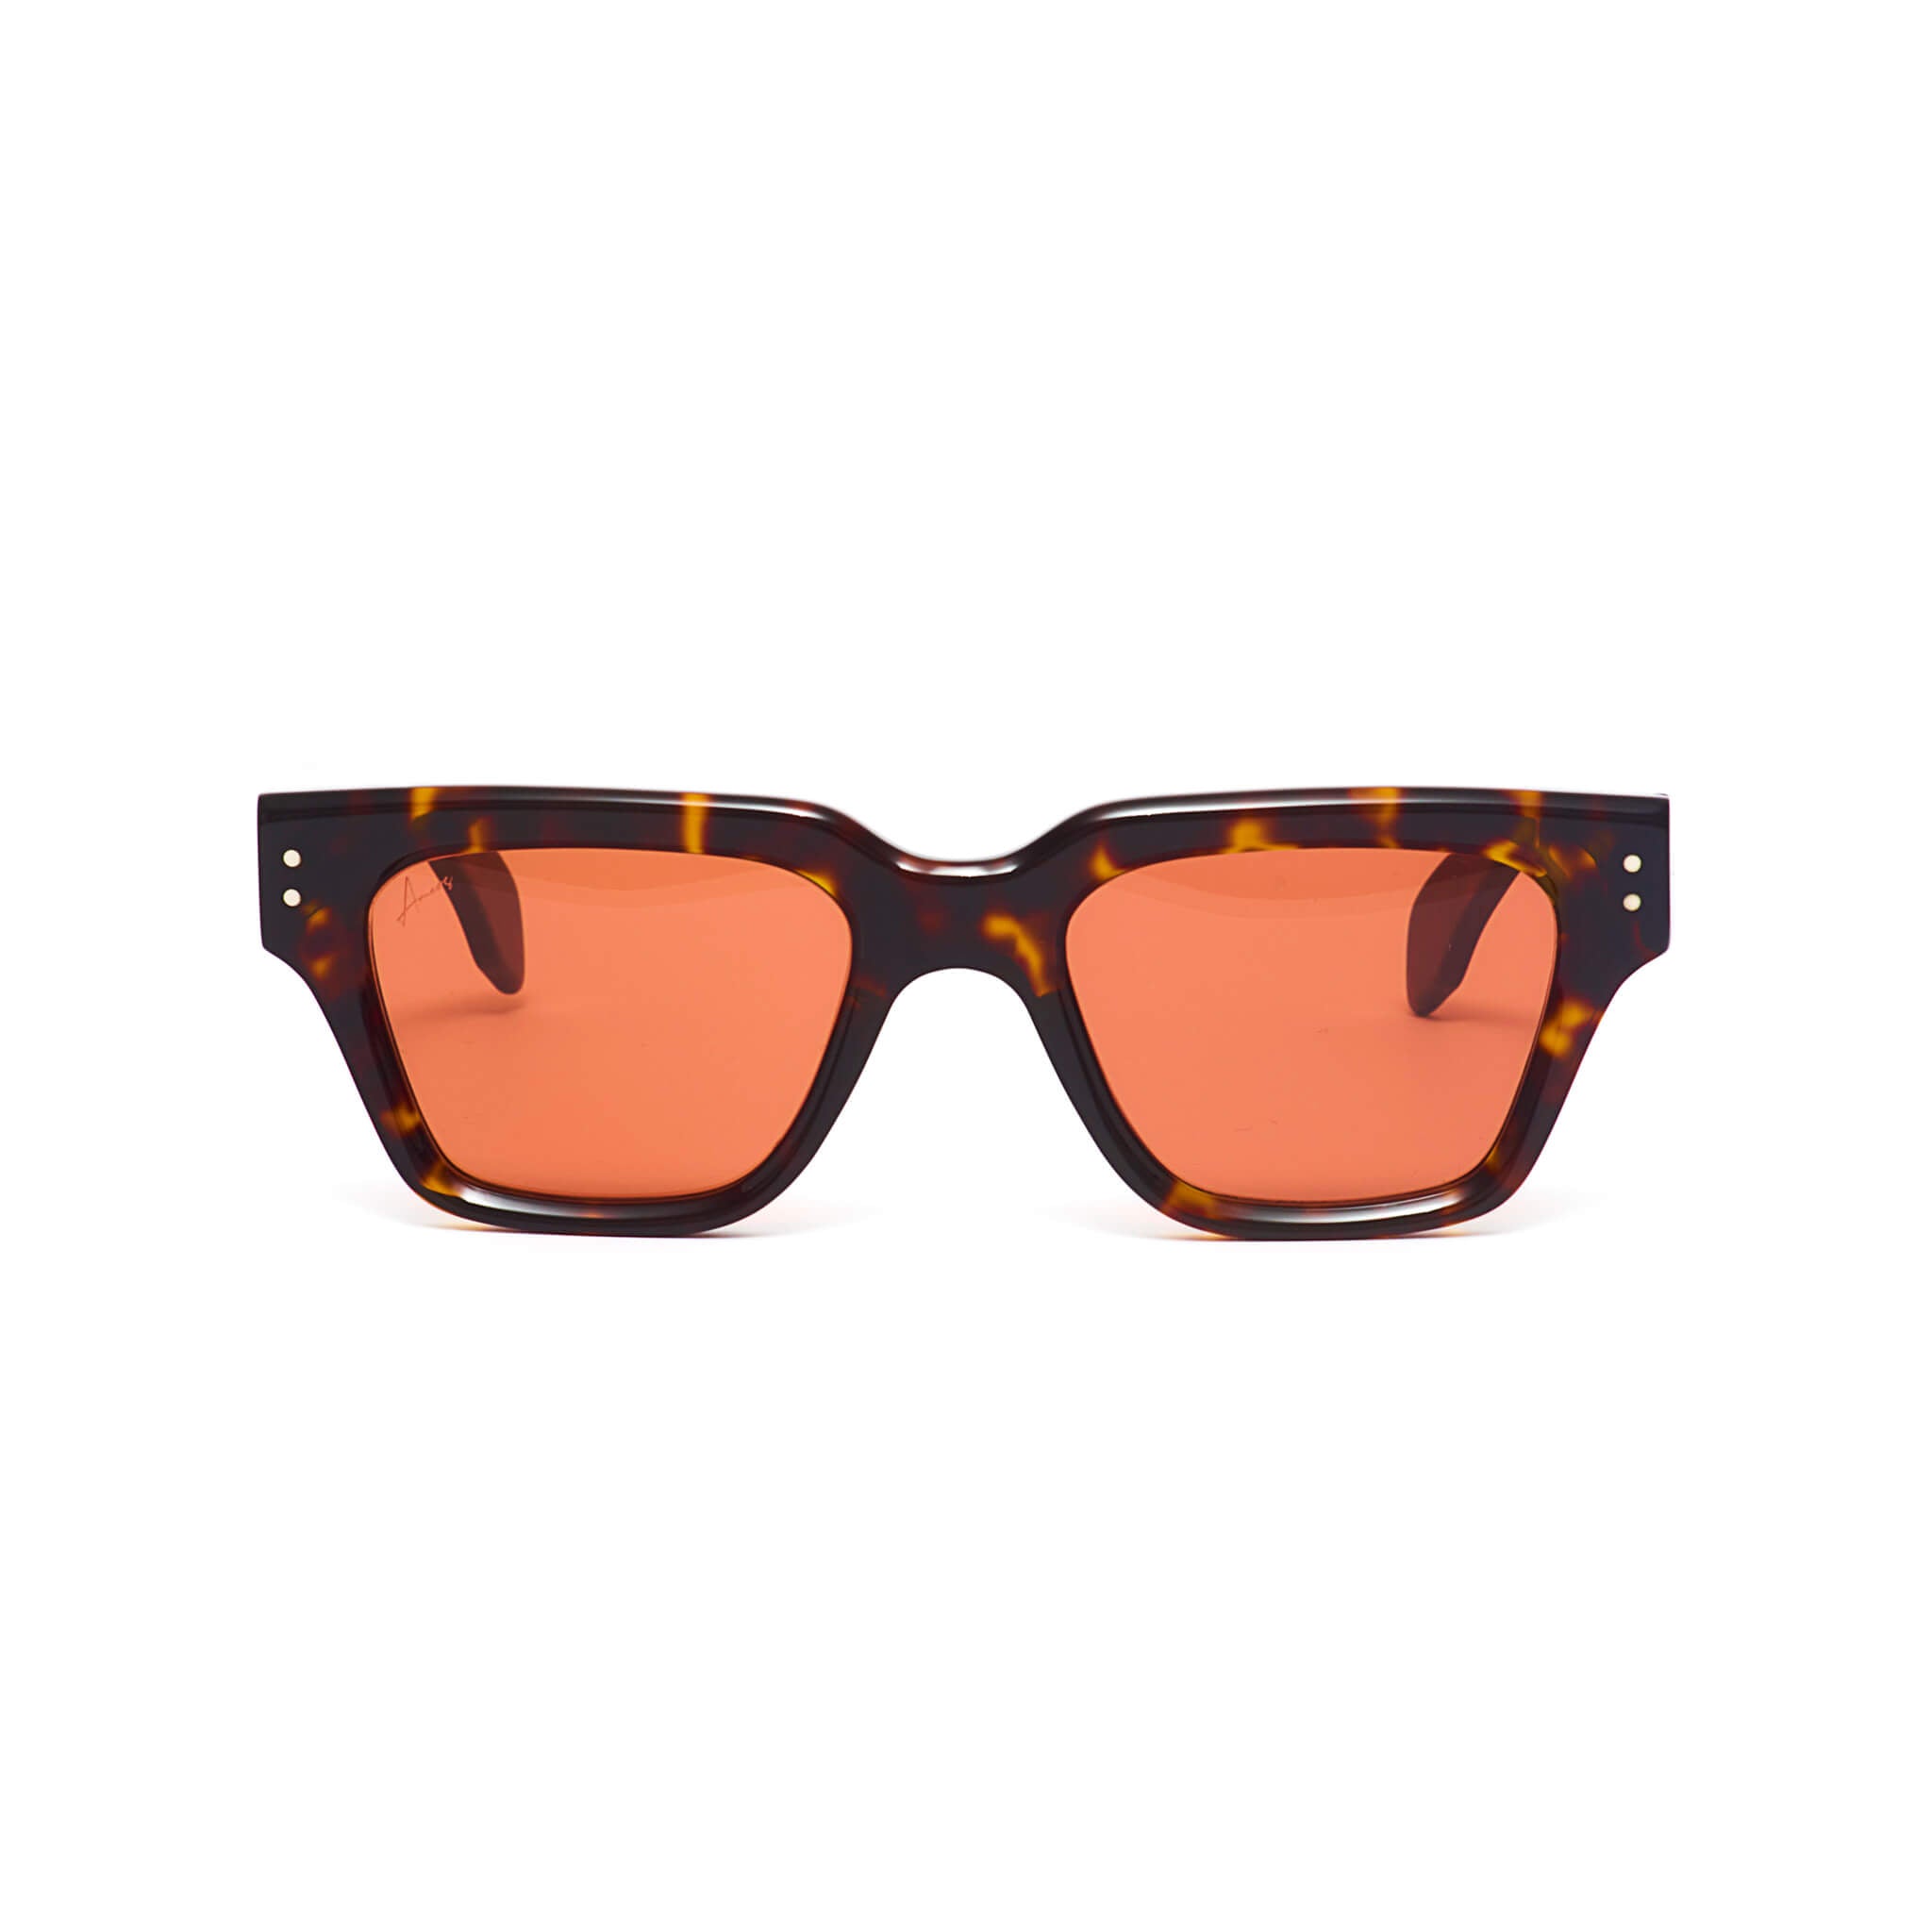 Tortoise frames sunglasses with red lenses